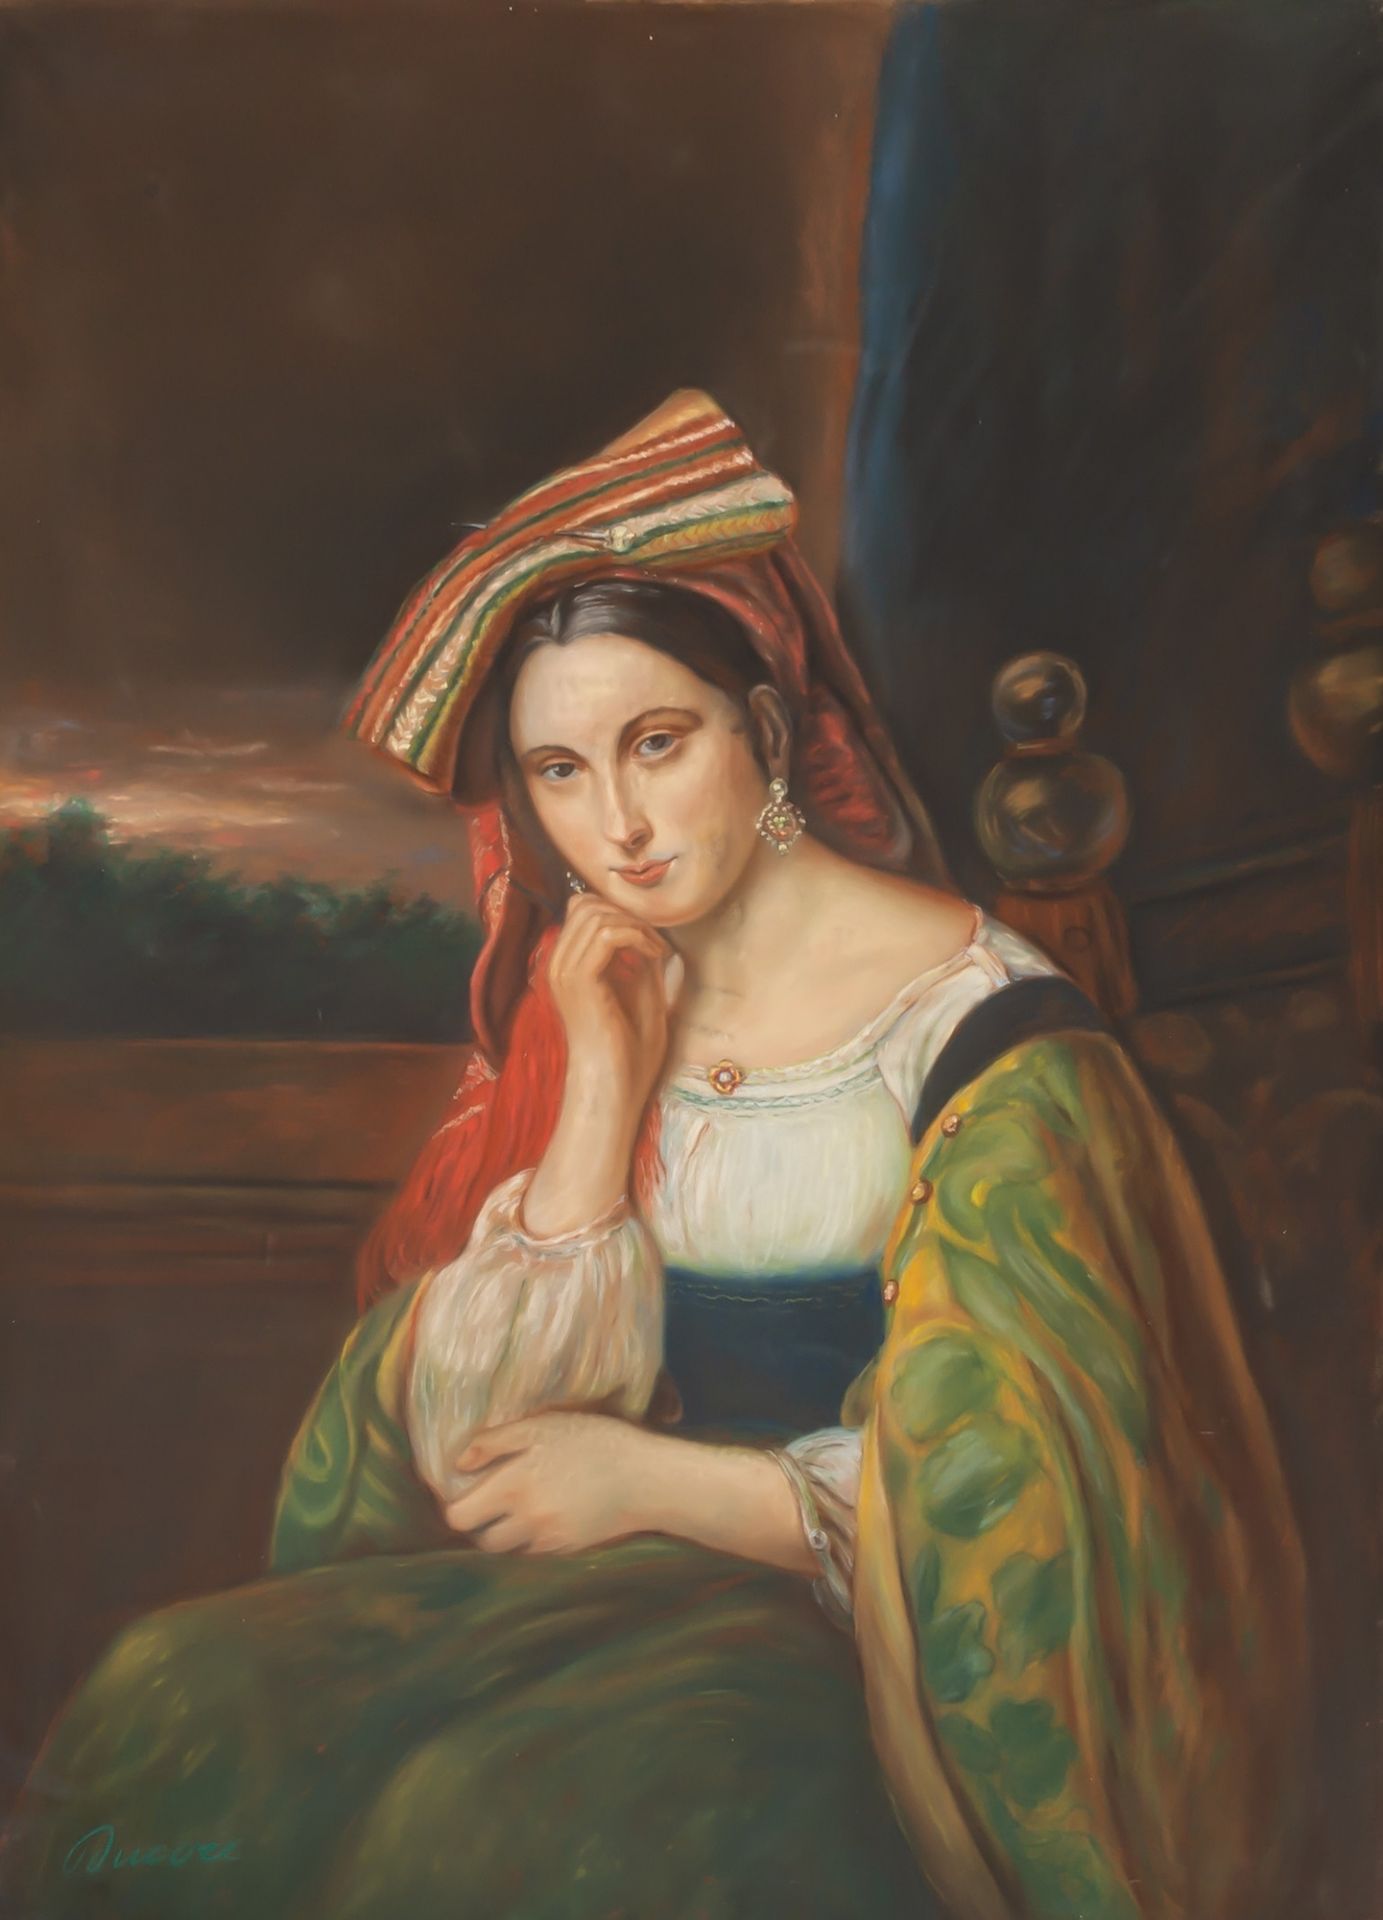 Italian school, Ducore: A portrait of an Eastern beauty, pastel on paper, 19th/20th C.